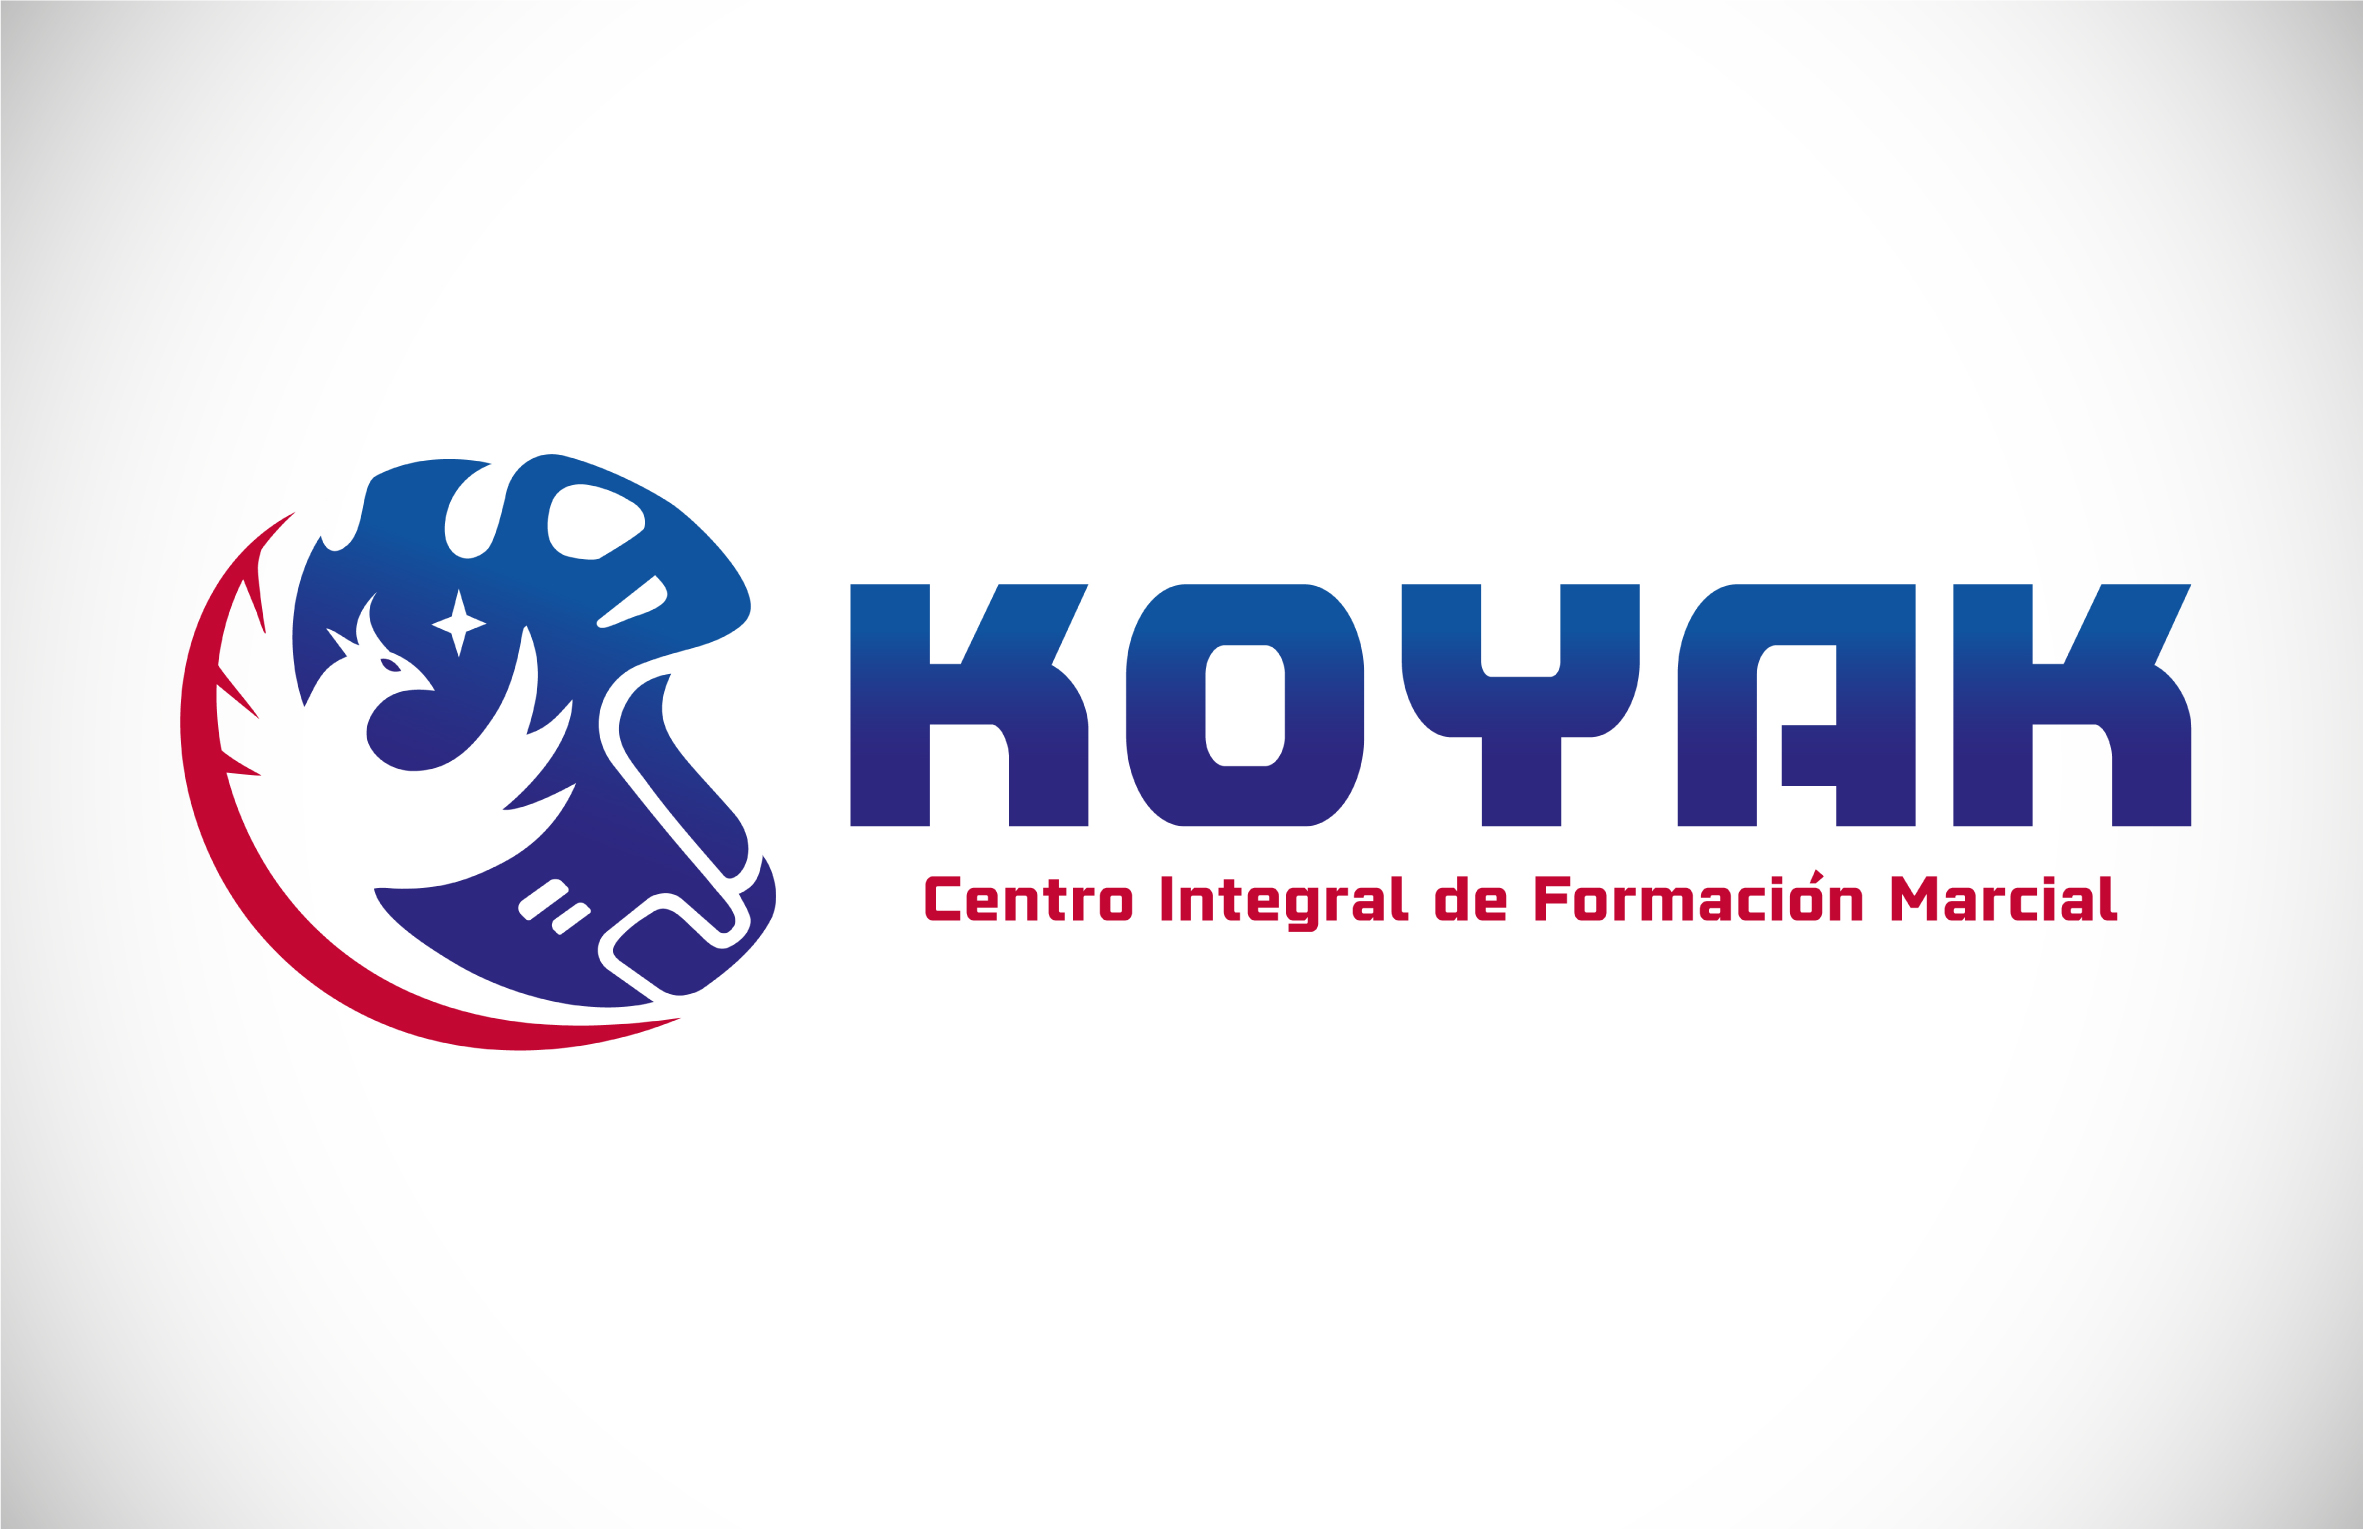 KOYAK CENTRO INTEGRAL DE FORMACION MARCIAL - NAGUAL CREATIVO - PORTAFOLIO - DISEÑO DE MARCAS Y LOGOTIPOS-27